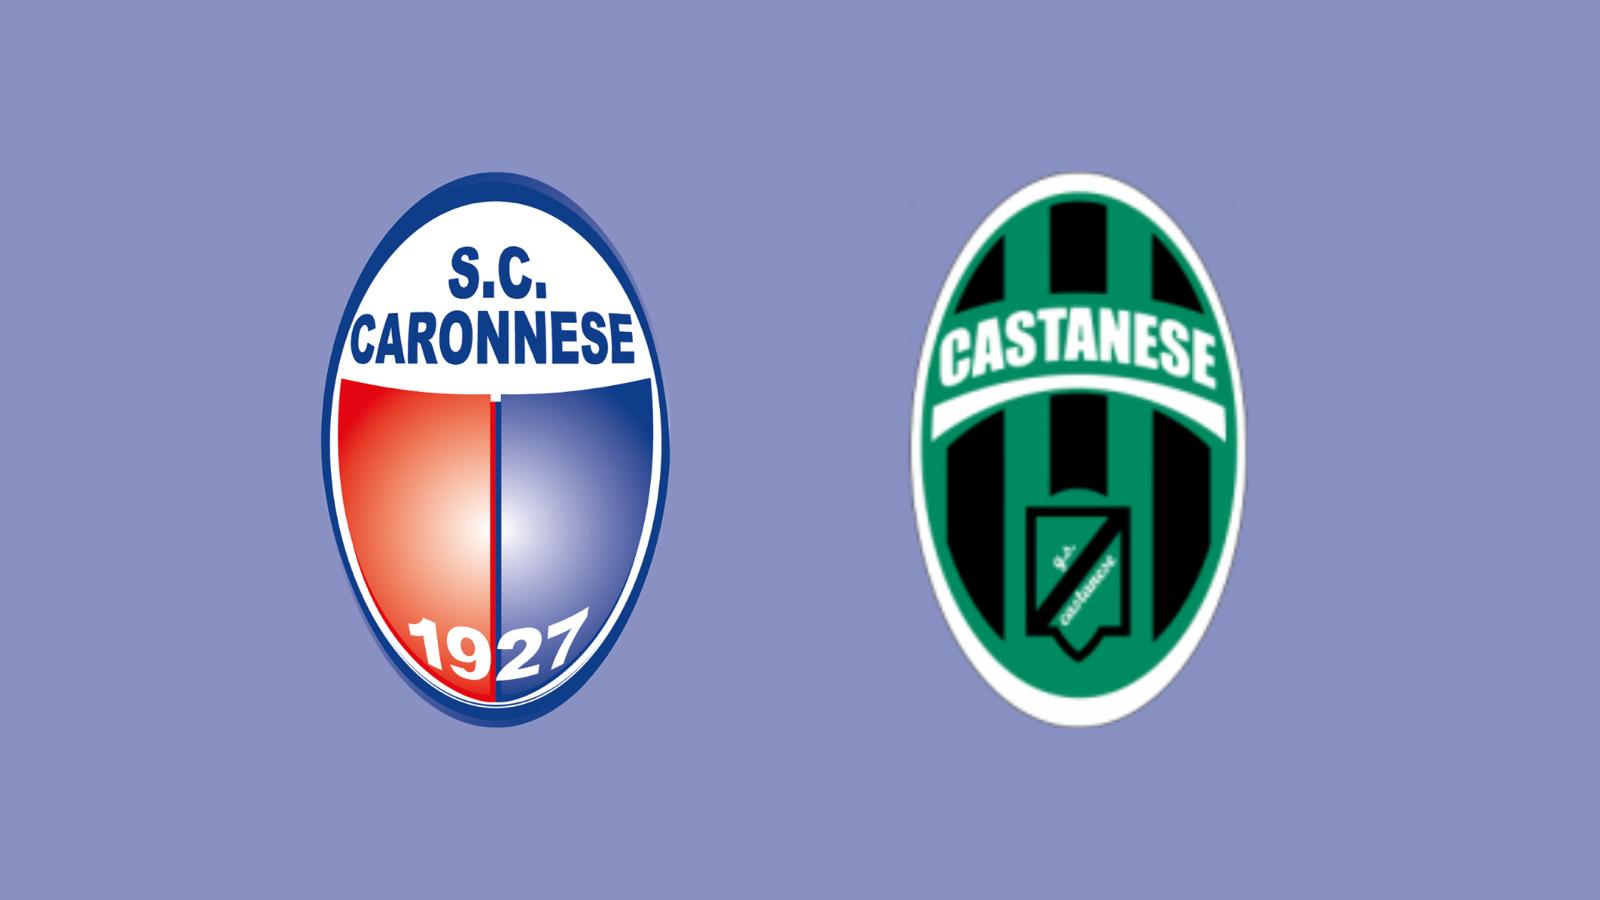 Caronnese 0-1 Castanese / I neroverdi mettono la freccia salvezza: il commento